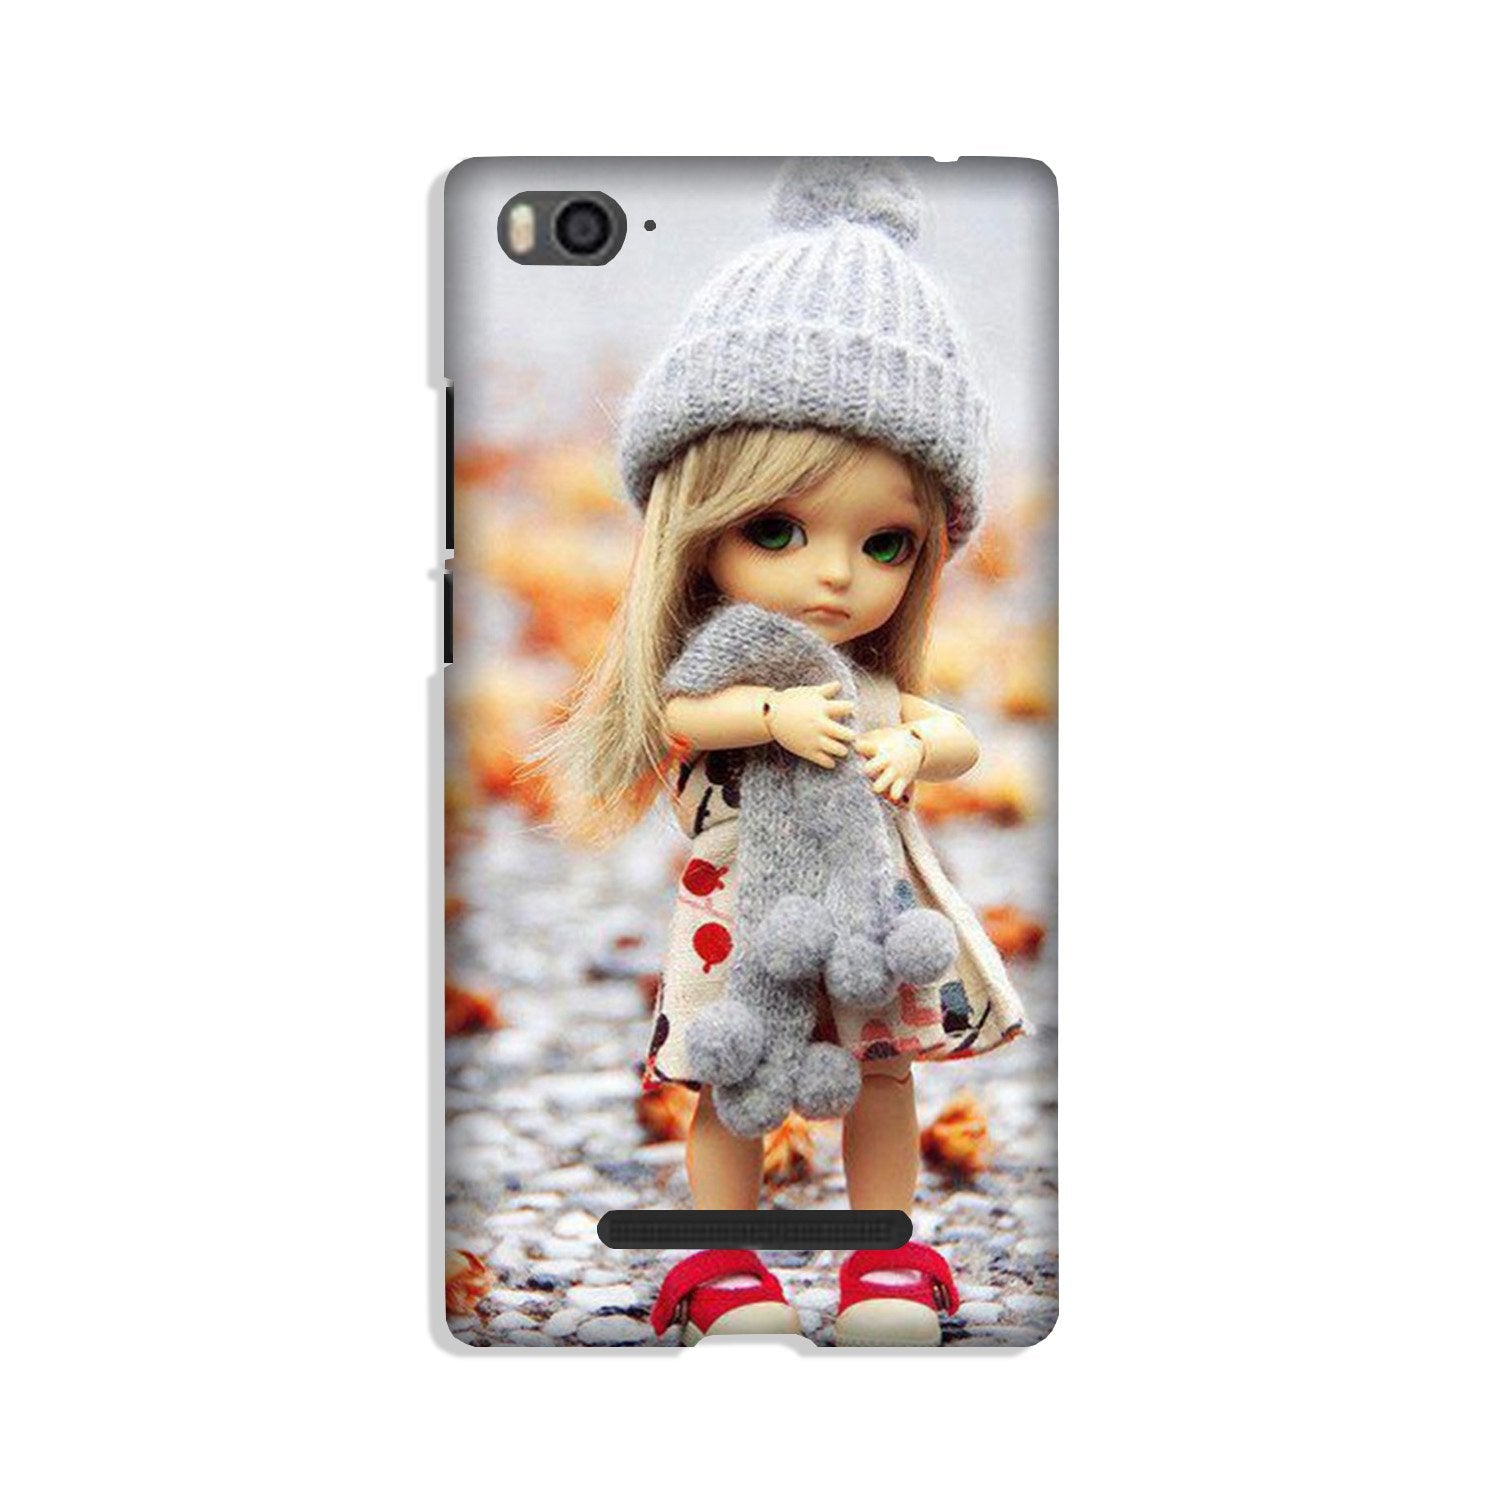 Cute Doll Case for Xiaomi Mi 4i